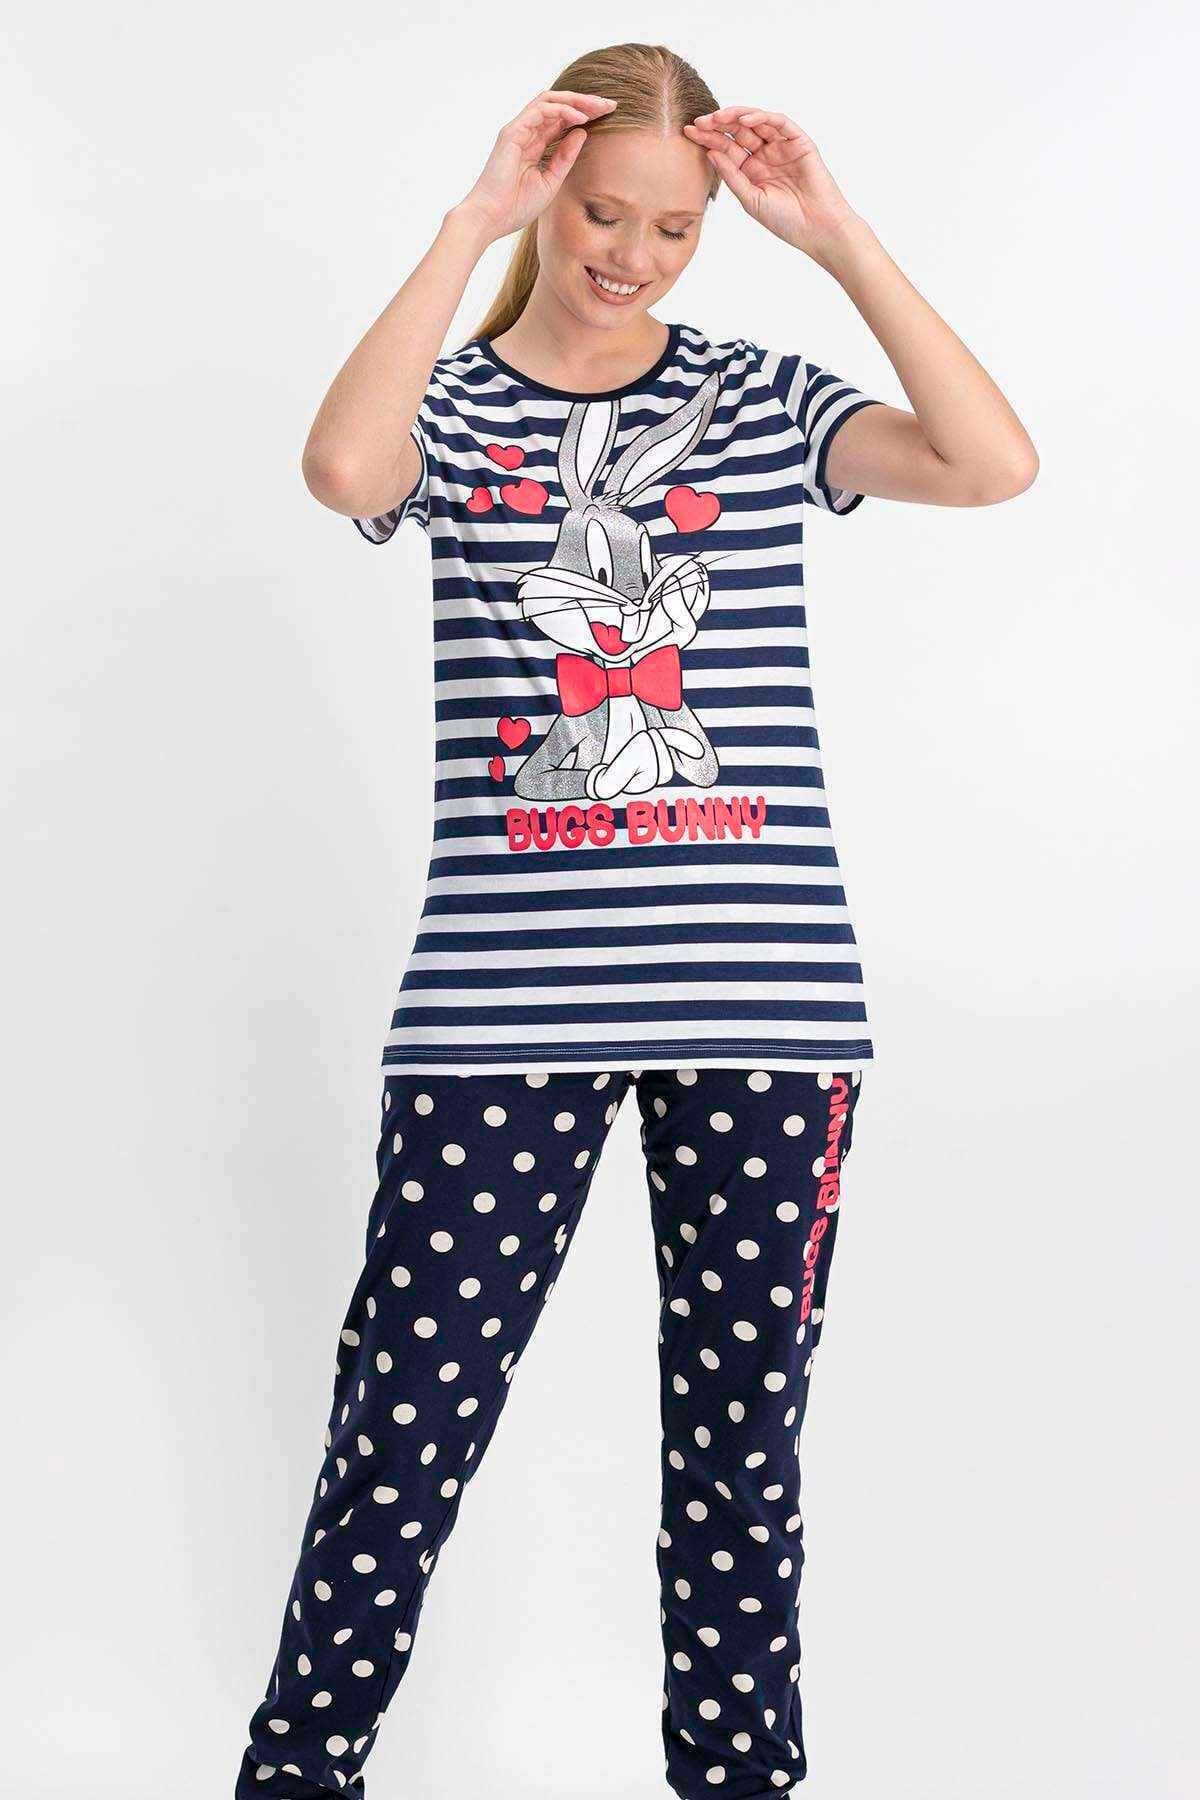 Lola & Bugs Bunny Kadın Bugs Bunny Lisanslı Lacivert Pijama Takımı